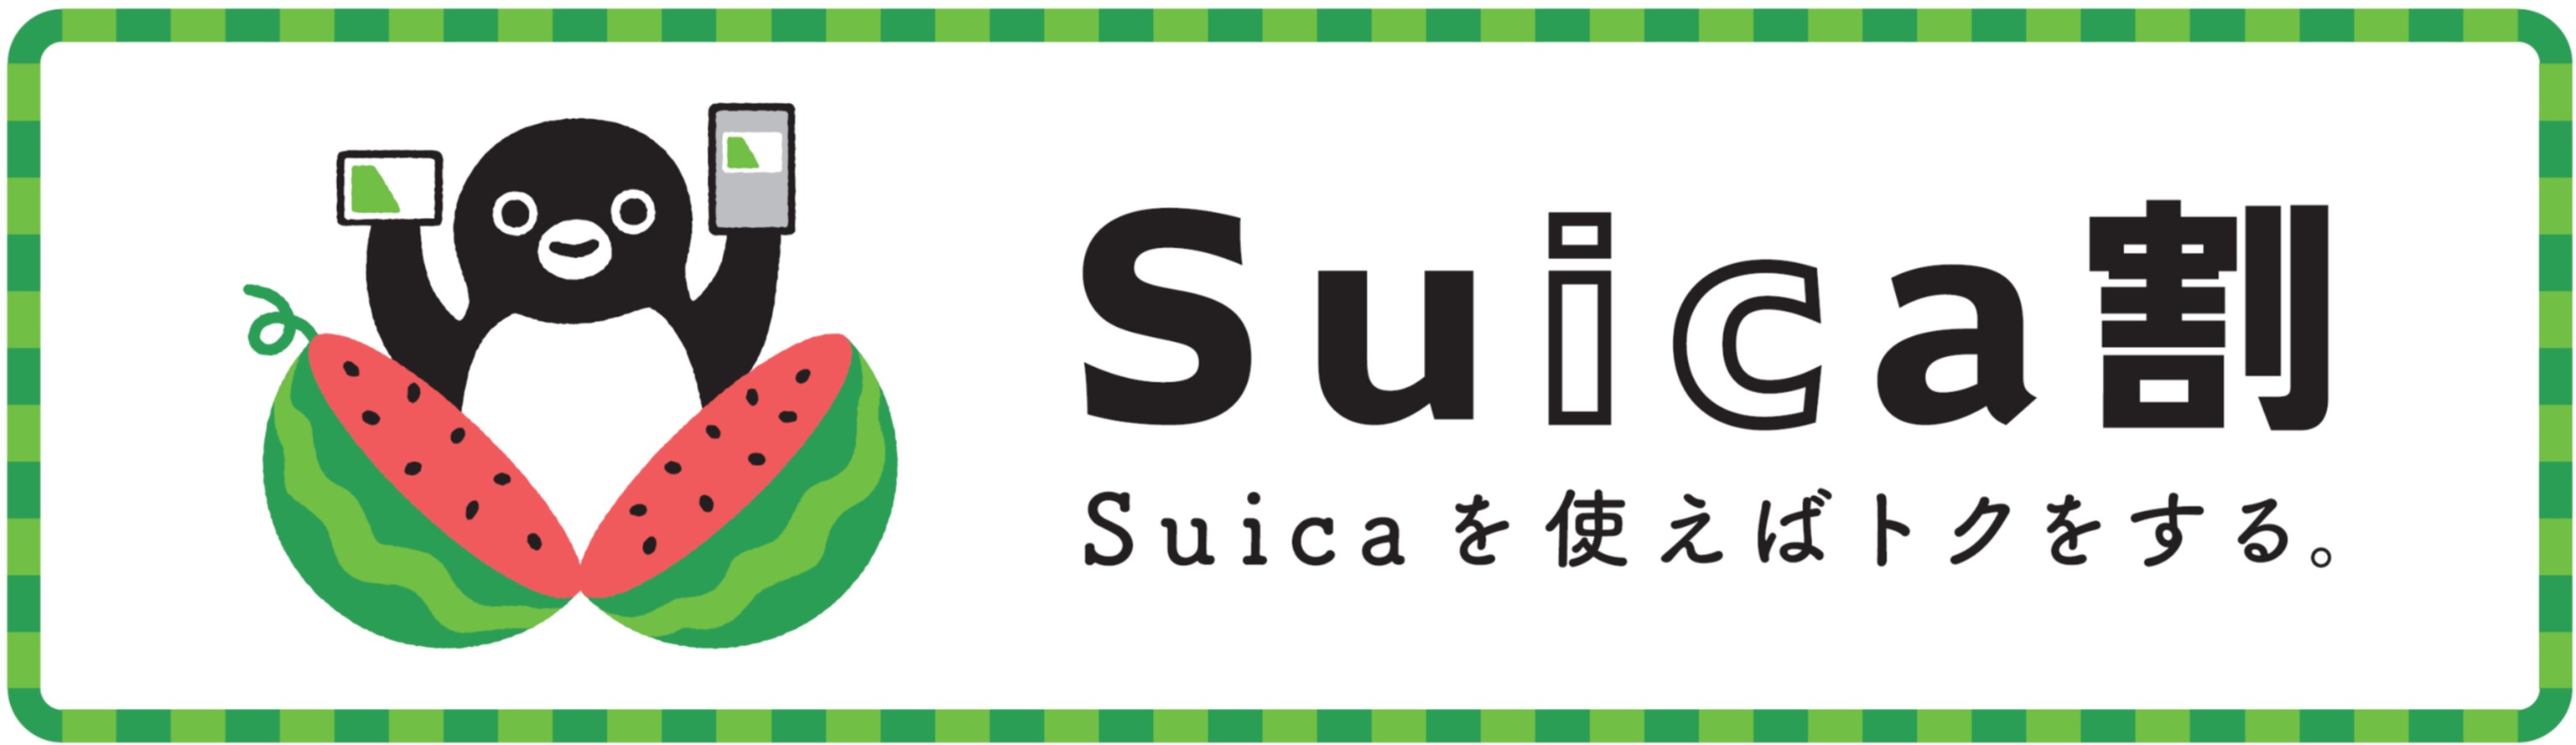 Suicaを使えばトクをする Suica割 スイカわり を実施 Jr Crossのプレスリリース